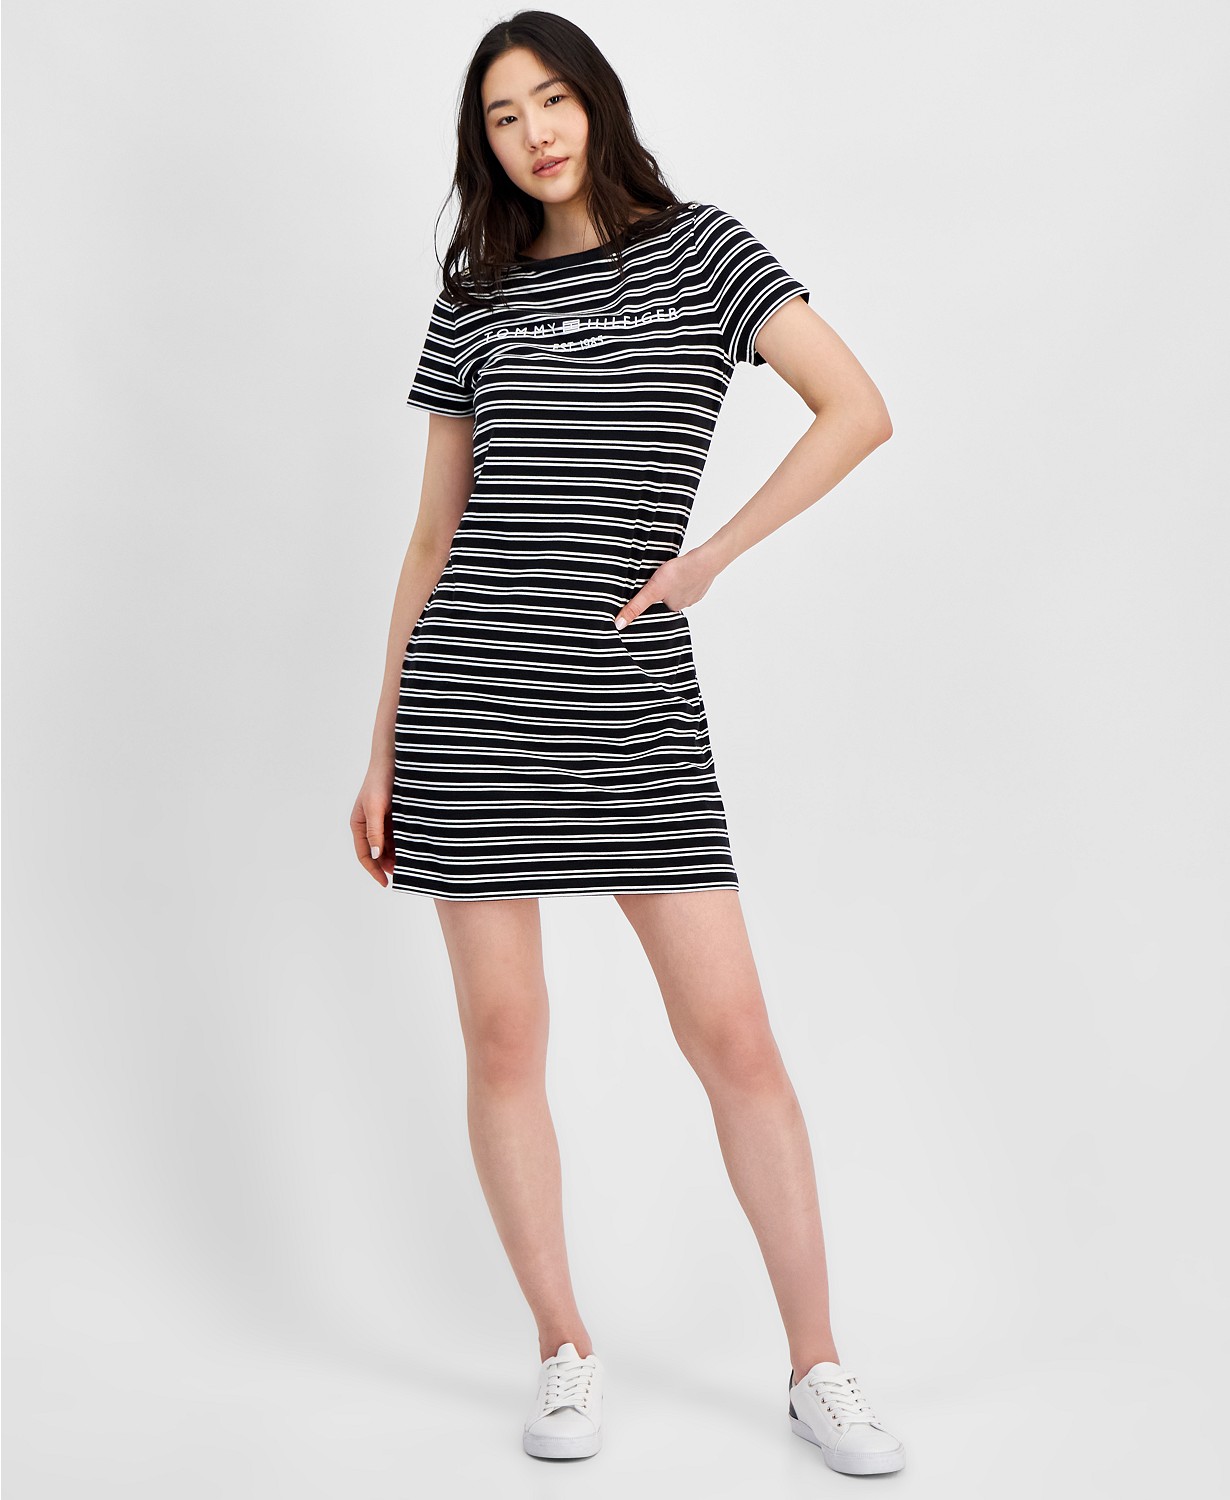 Womens Striped Logo Short-Sleeve T-Shirt Dress